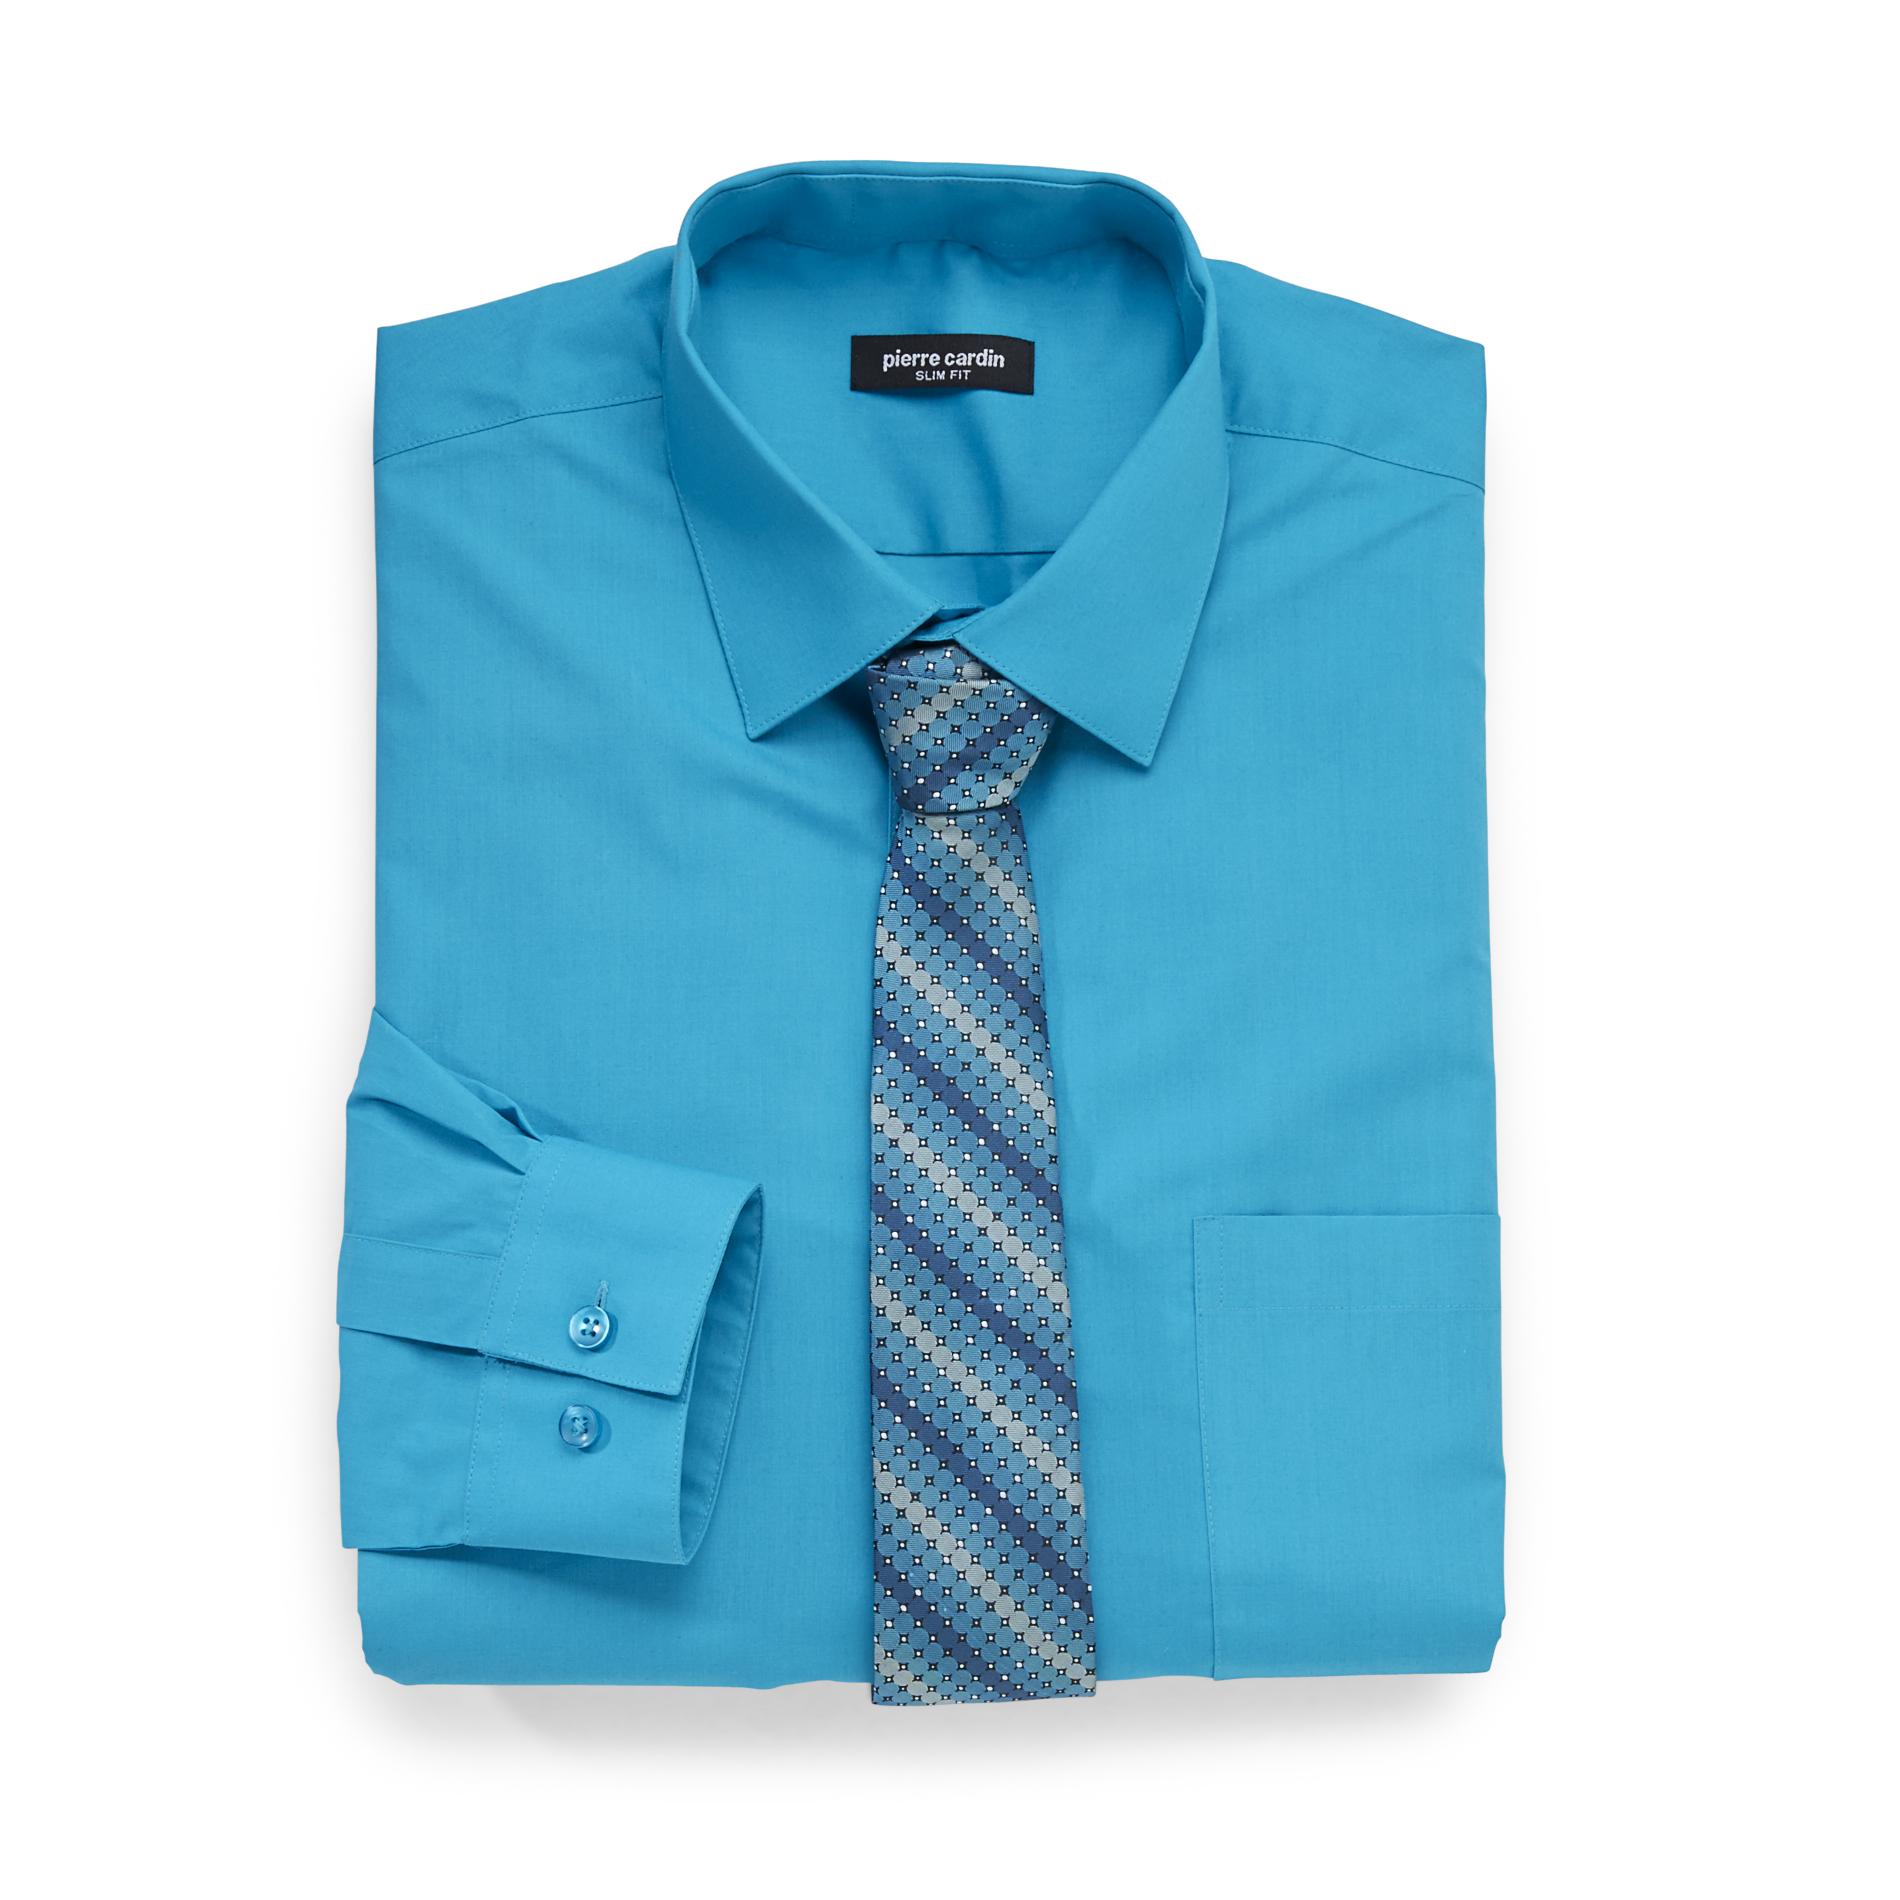 Pierre Cardin Men's Slim Fit Shirt & Tie - Striped